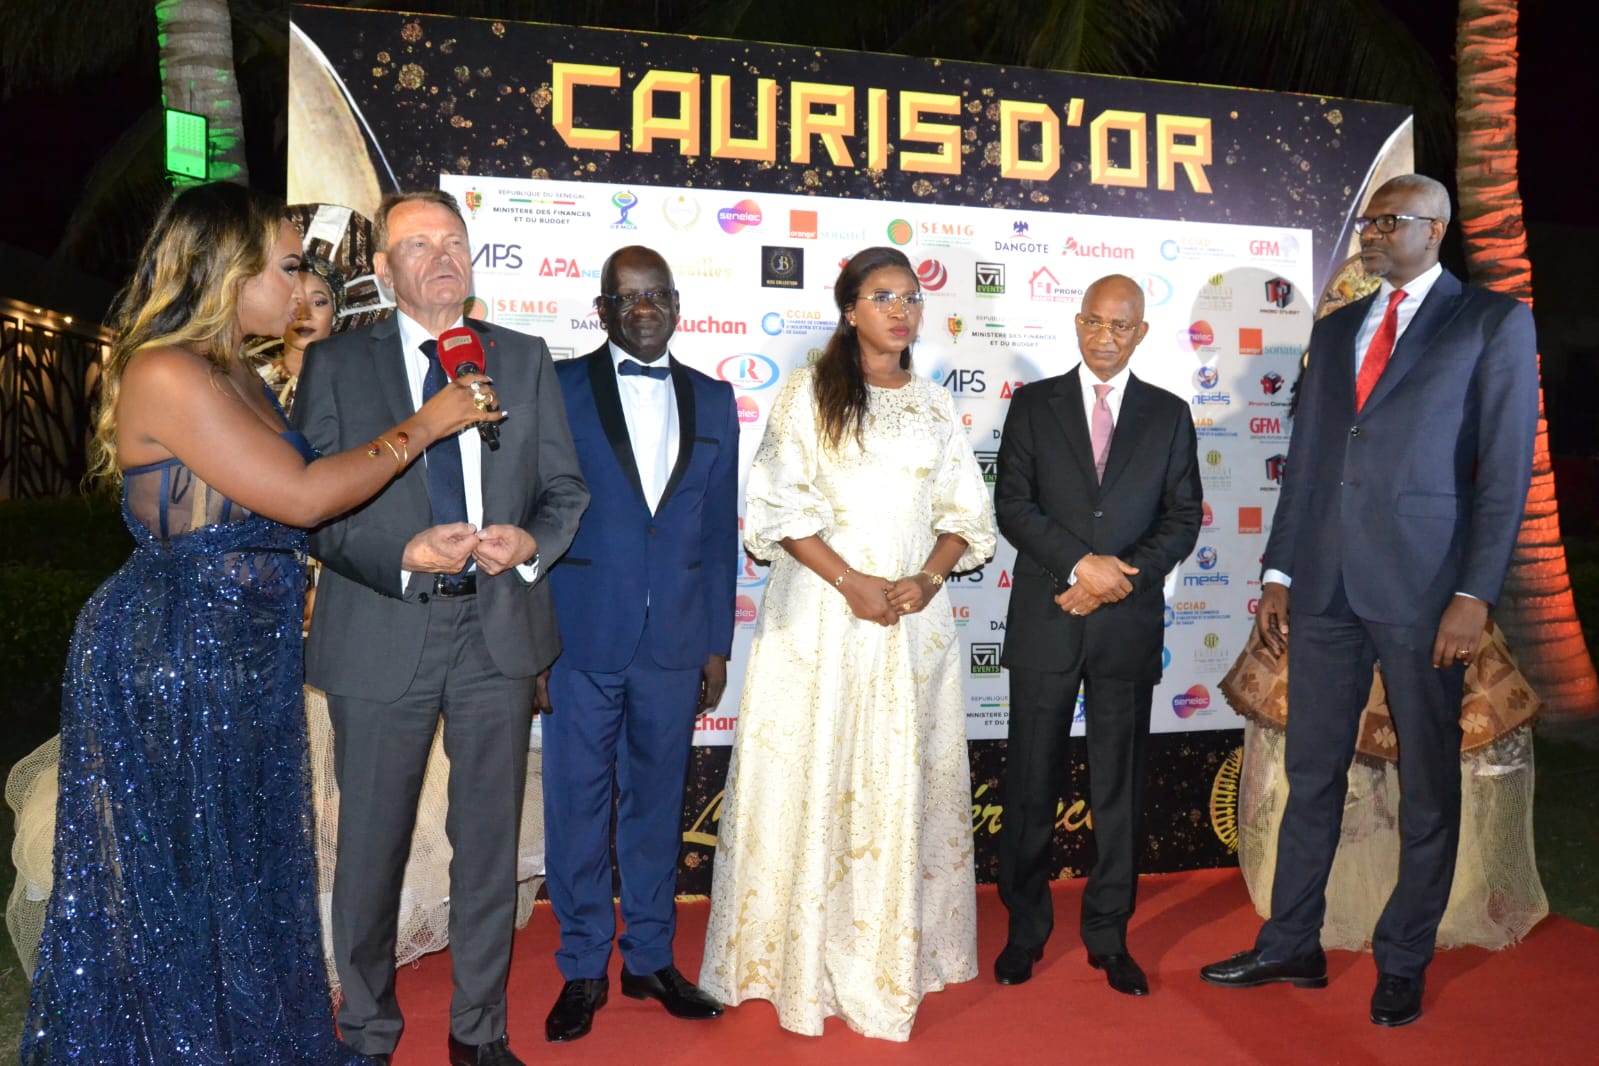 18 ème édition des Cauris d'Or- Les deux champions nationaux Youssou Ndour et Mbagnick Diop ont mis le feu au King Fahd Palace (IMAGES)